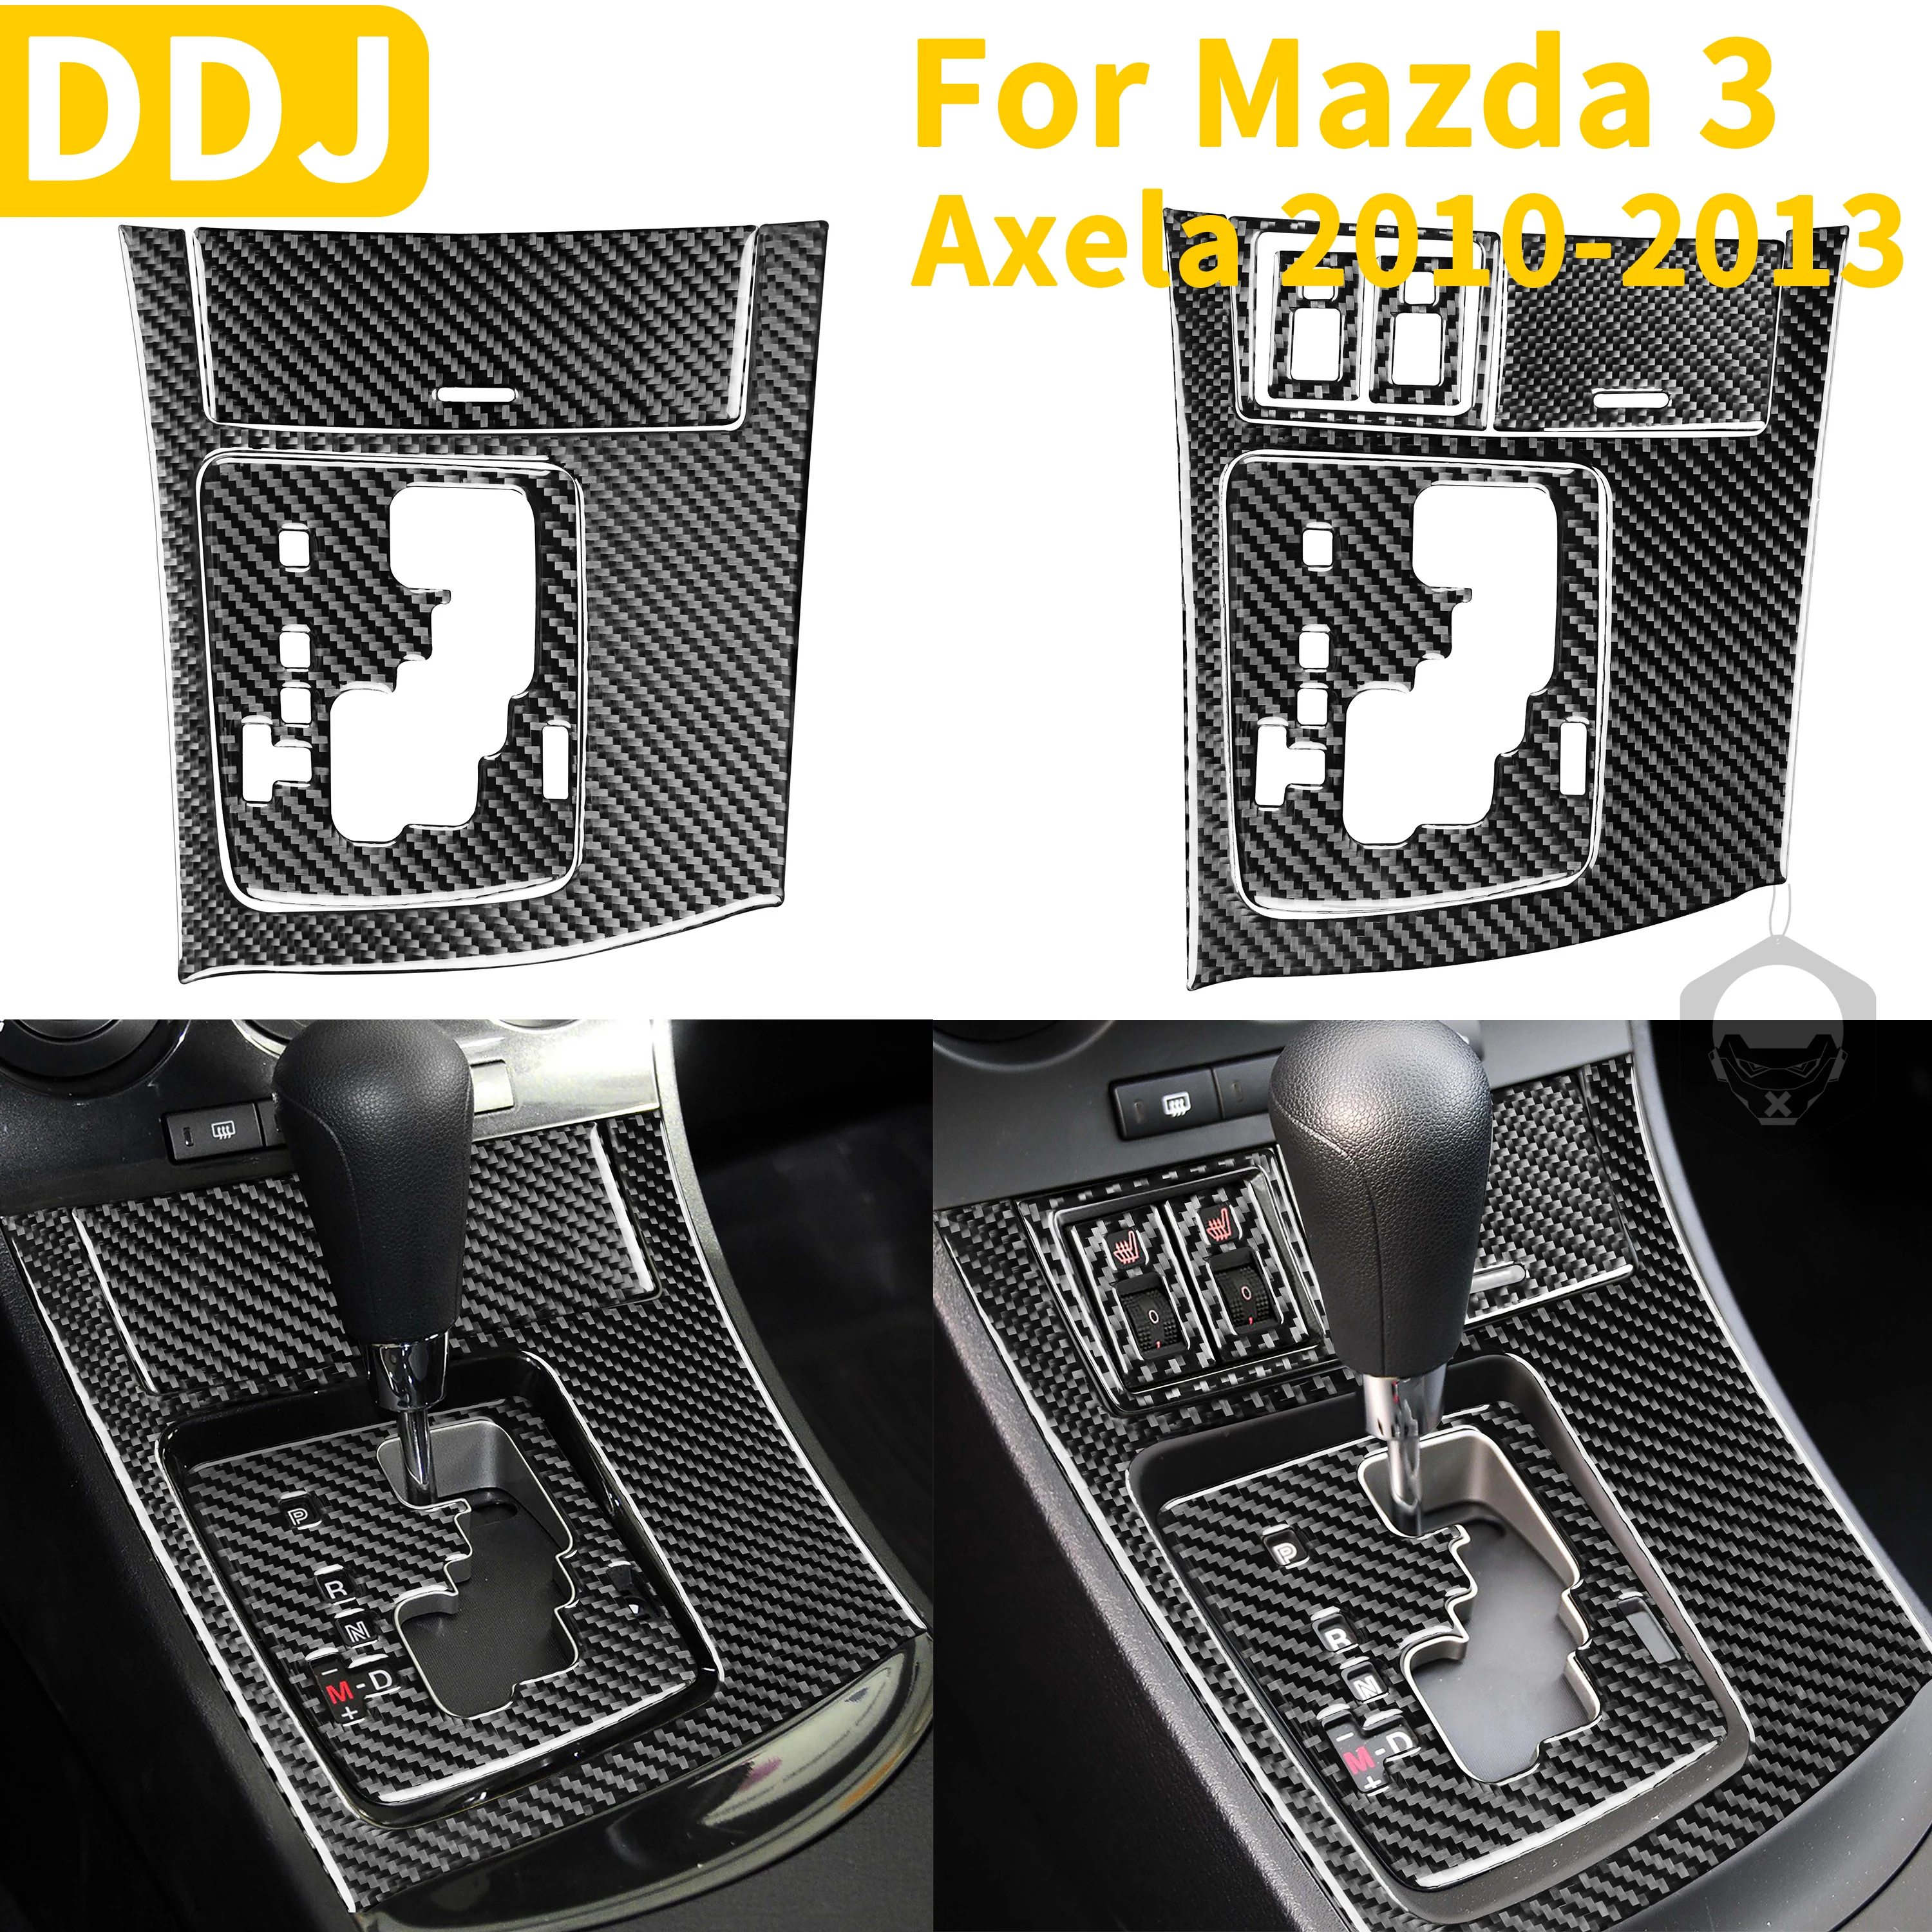 

For Mazda 3 Axela 2010-2013 Gear Shift Panel Surround Shifter Console Cover Carbon Fiber Sticker Interior Trim Car Accessories